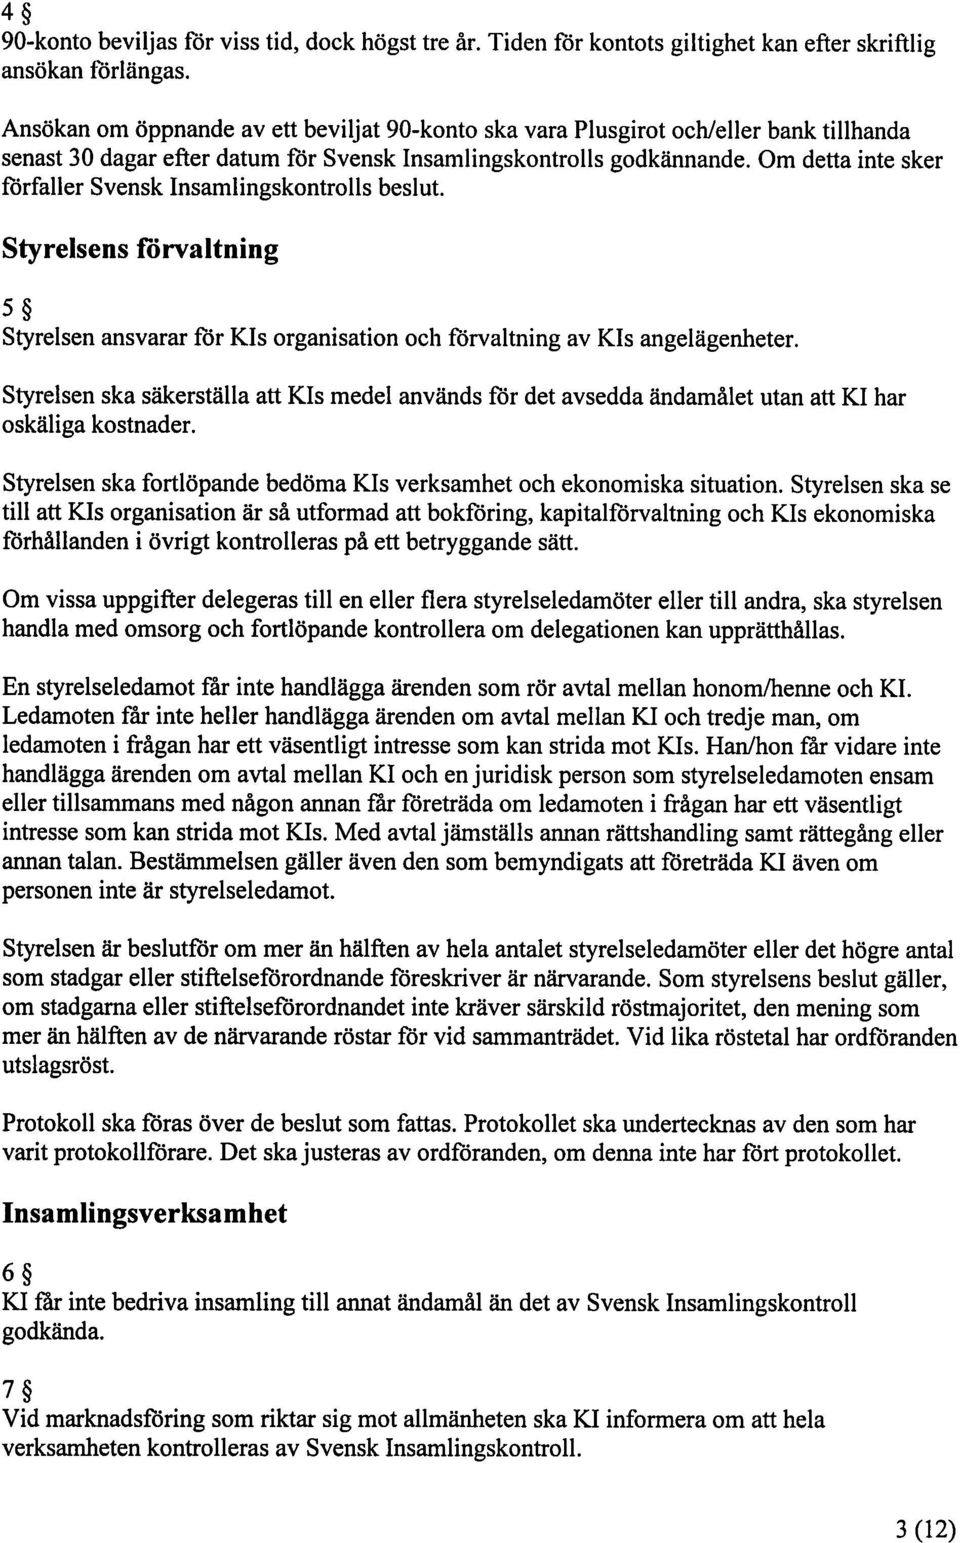 Om detta itite sker förfaller Svensk Insamlingskontrolls beslut. Styrelsens förvaltning 5S Styrelsen ansvarar för Kis organisation och förvaltning av KIs angelägenheter.